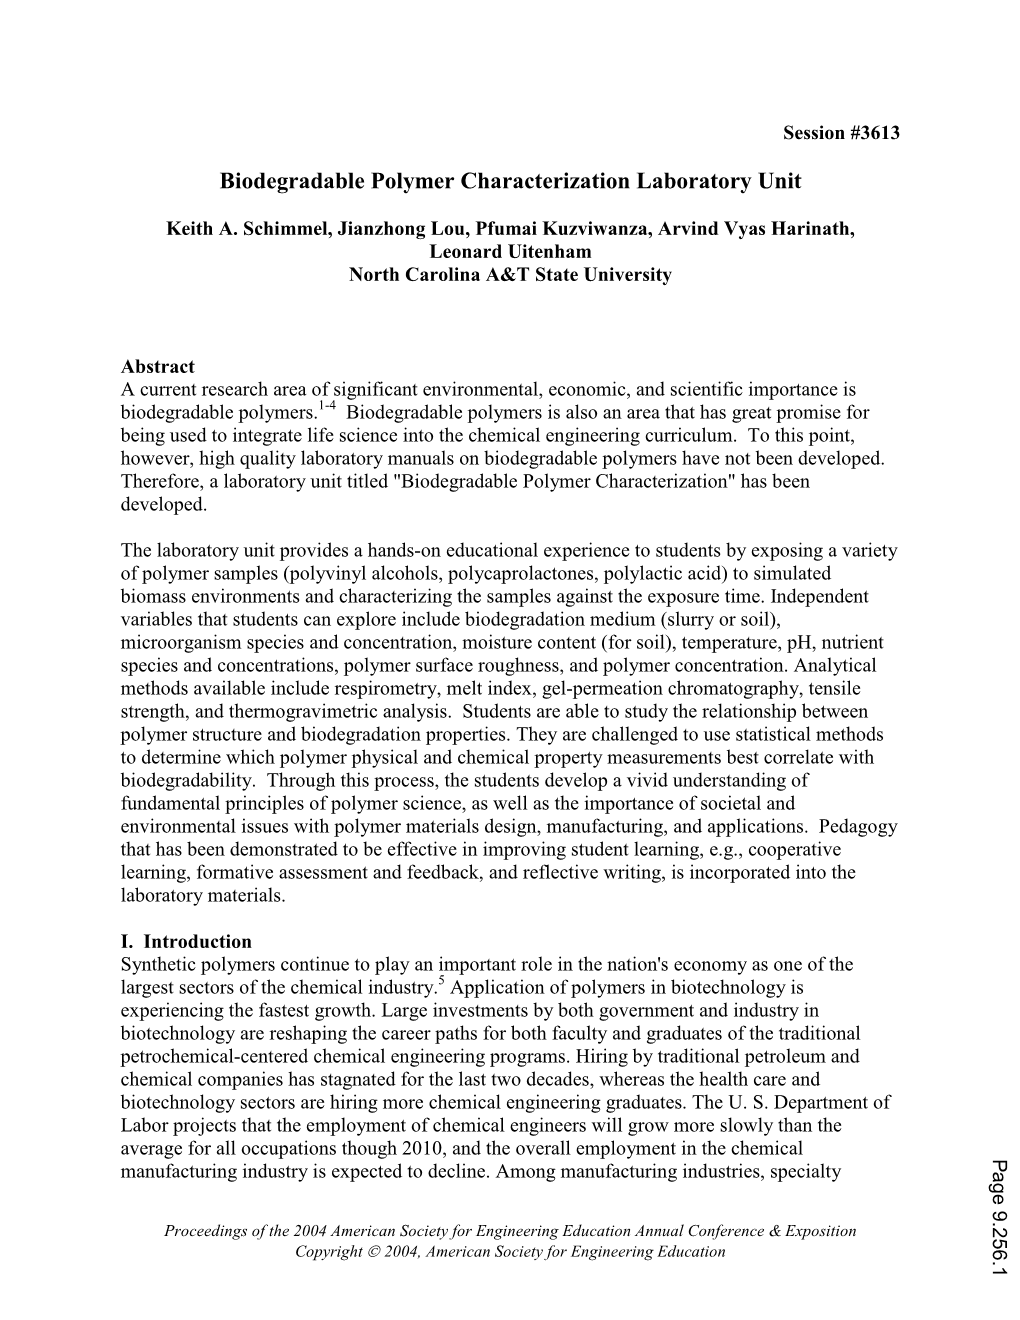 Biodegradable Polymer Characterization Laboratory Unit